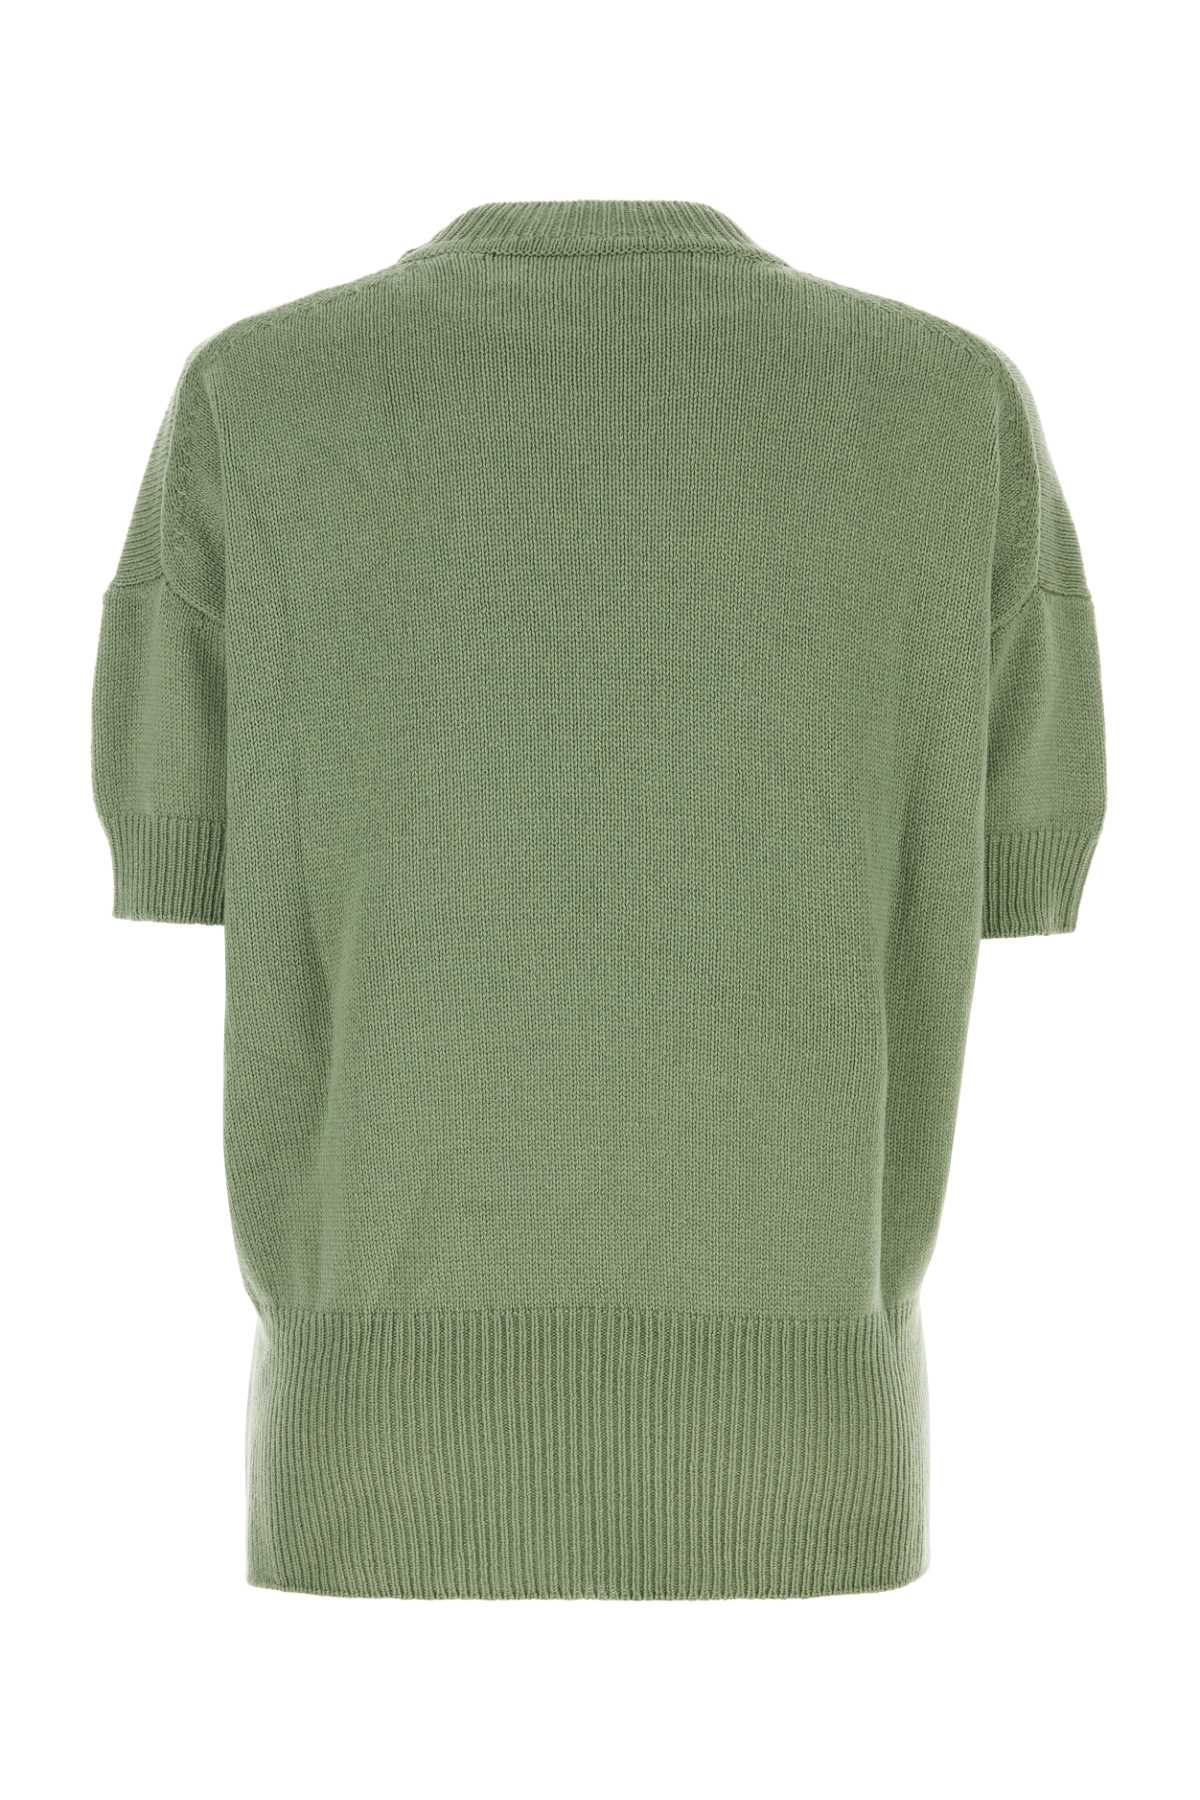 Jil Sander Pastel Green Wool Sweater In 329